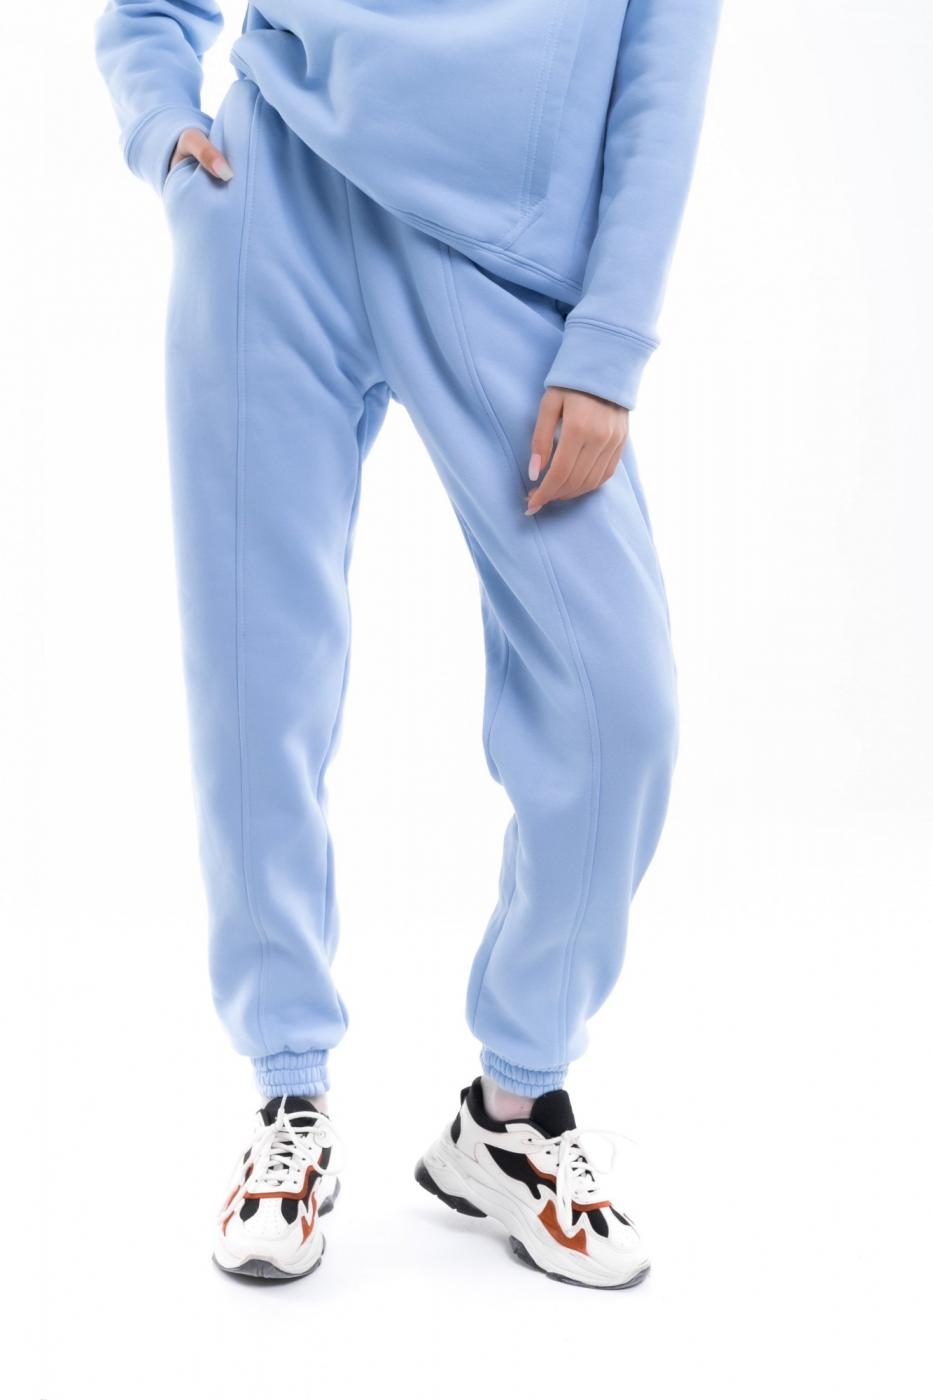 Джогеры Женские теплые Intruder Basic Oversize спортивные штаны на флисе голубые Intruder